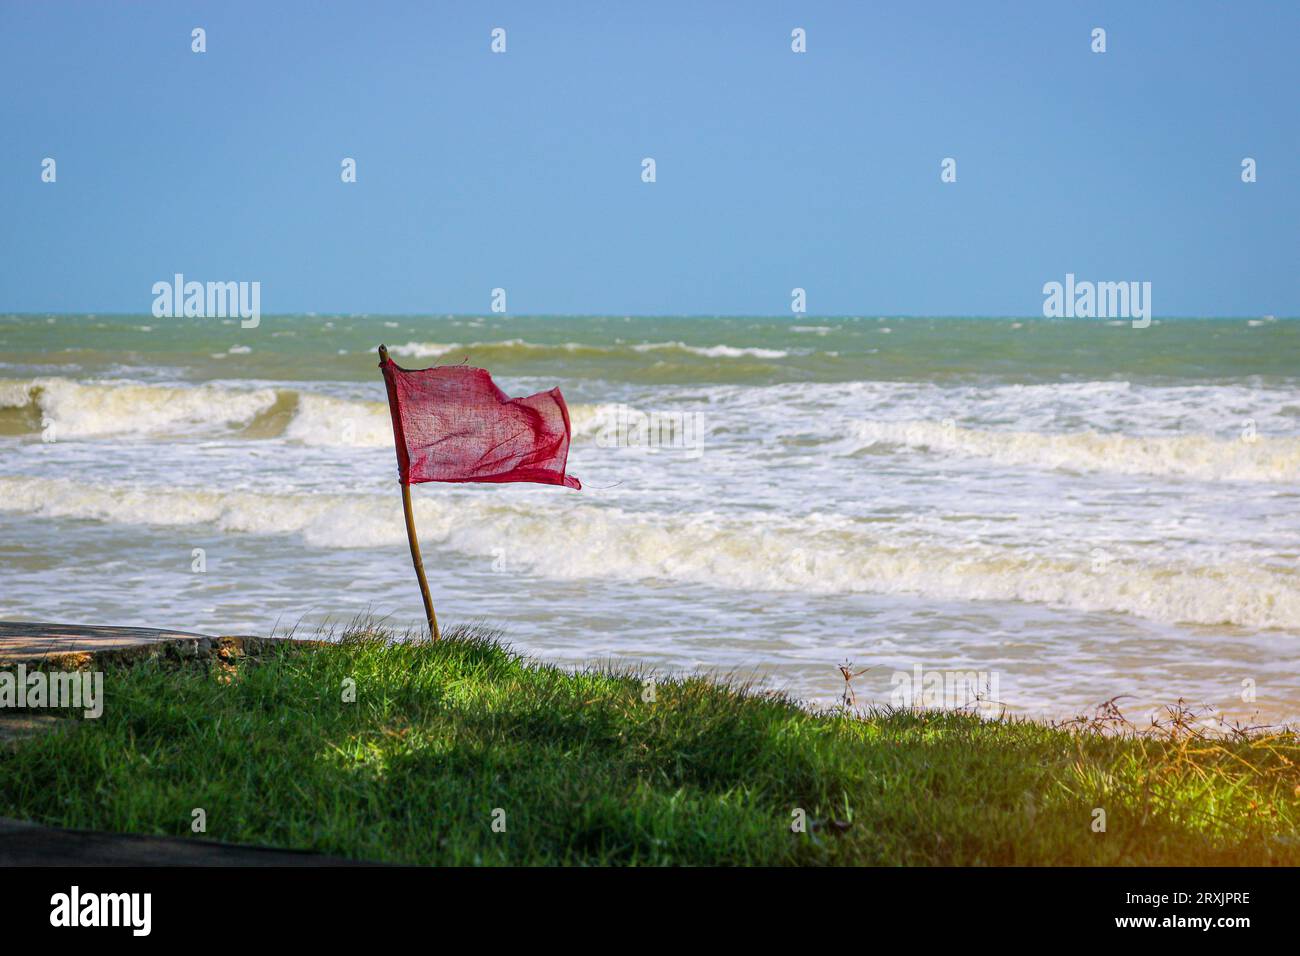 Bandiera rossa che sbatte nel vento sulla spiaggia durante il tempo tempestoso. Nuotare è pericoloso nelle onde marine. Foto Stock